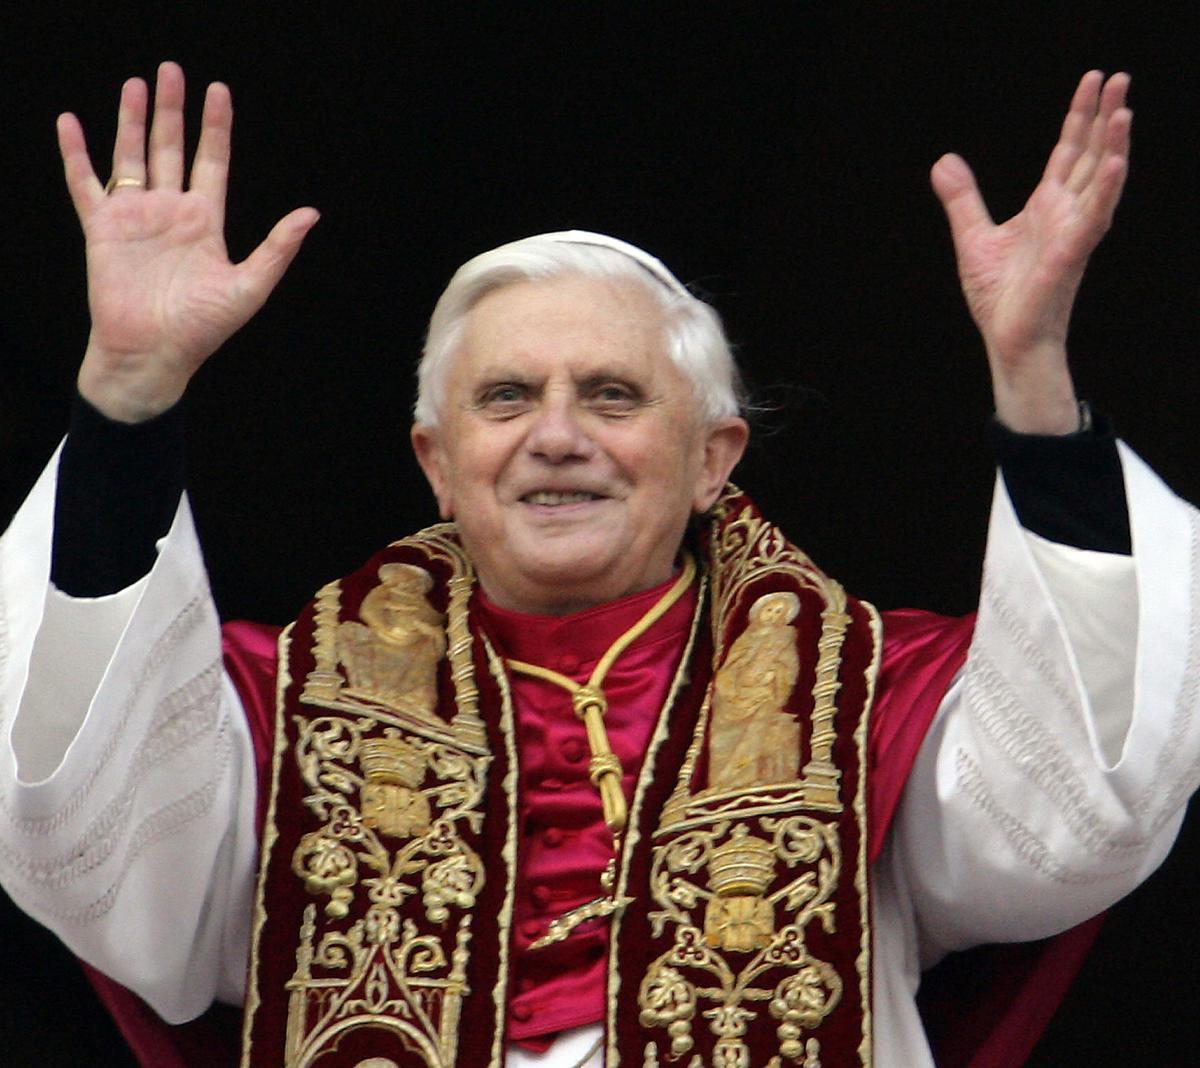 El papa Benedicto XVI, tras ser elegido, saluda a los peregrinos desde el balcón de la basílica de San Pedro, en El Vaticano, el 19 de abril del 2005.